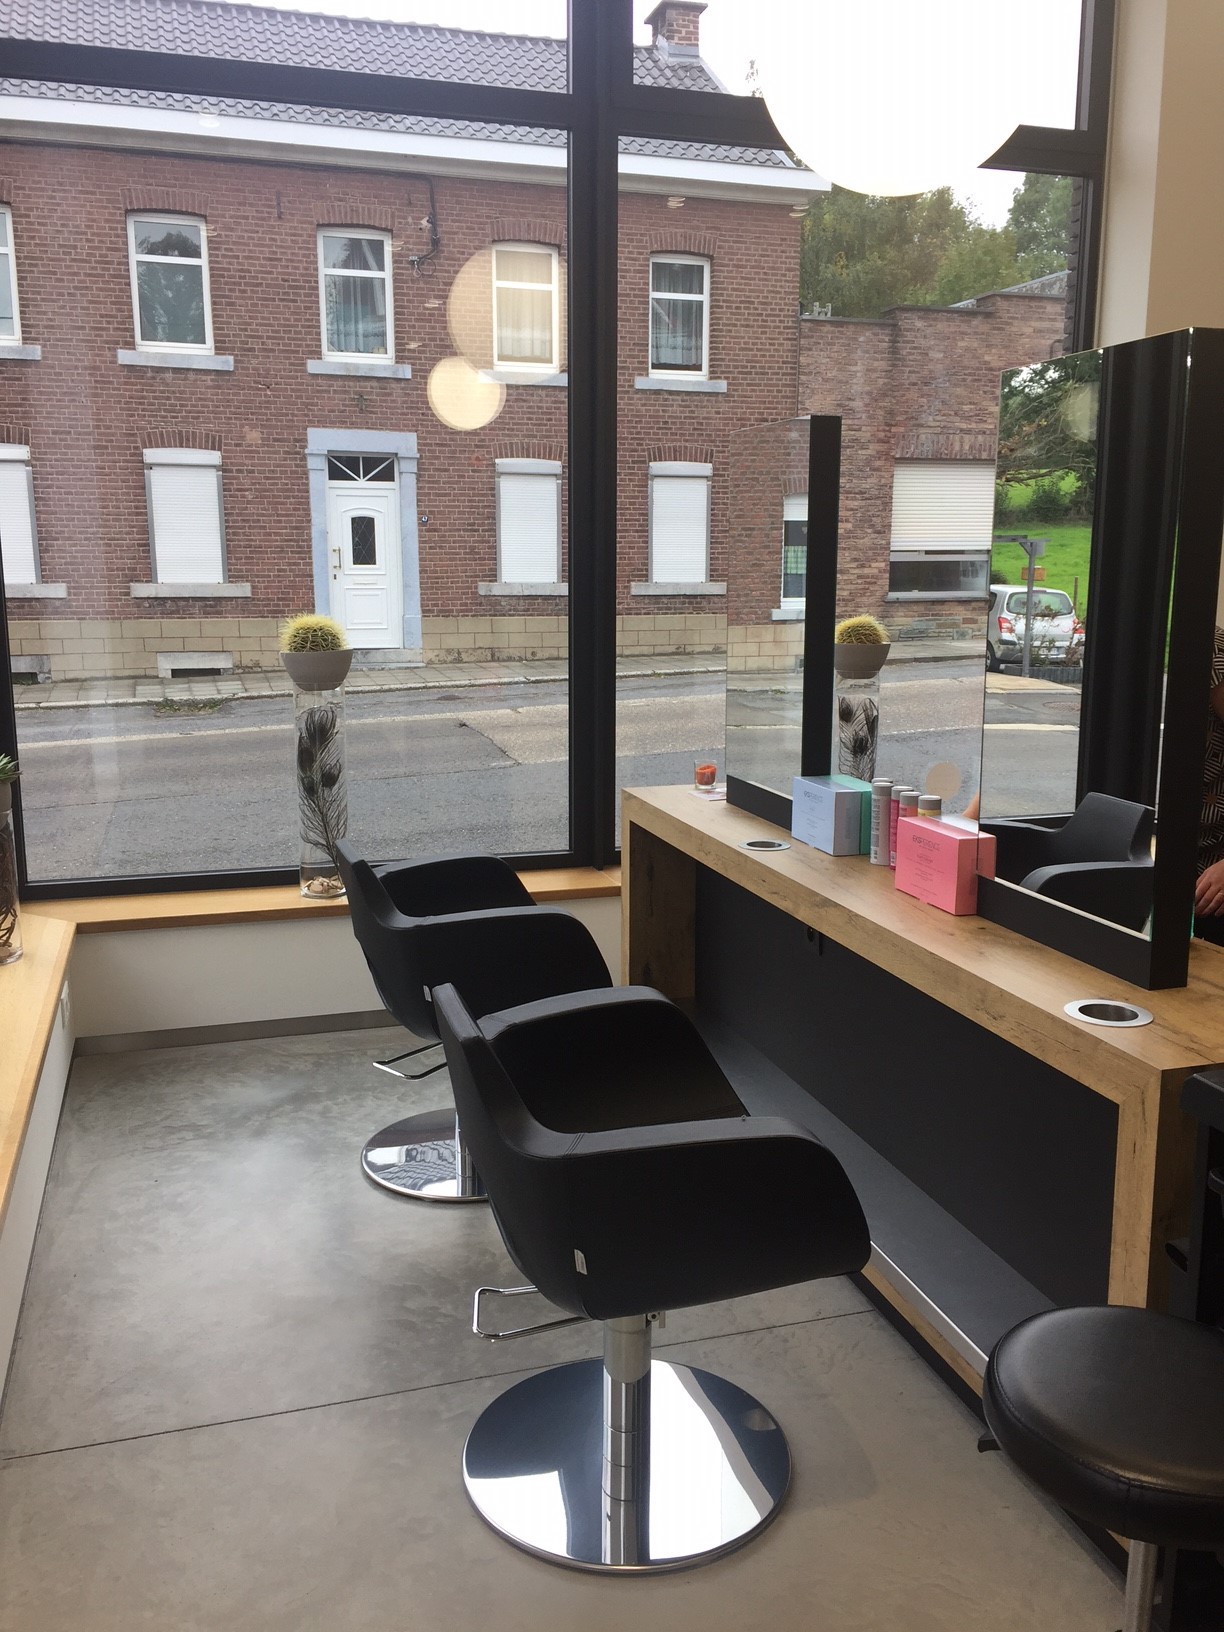 Salon de coiffure en harmonie avec la maison privée